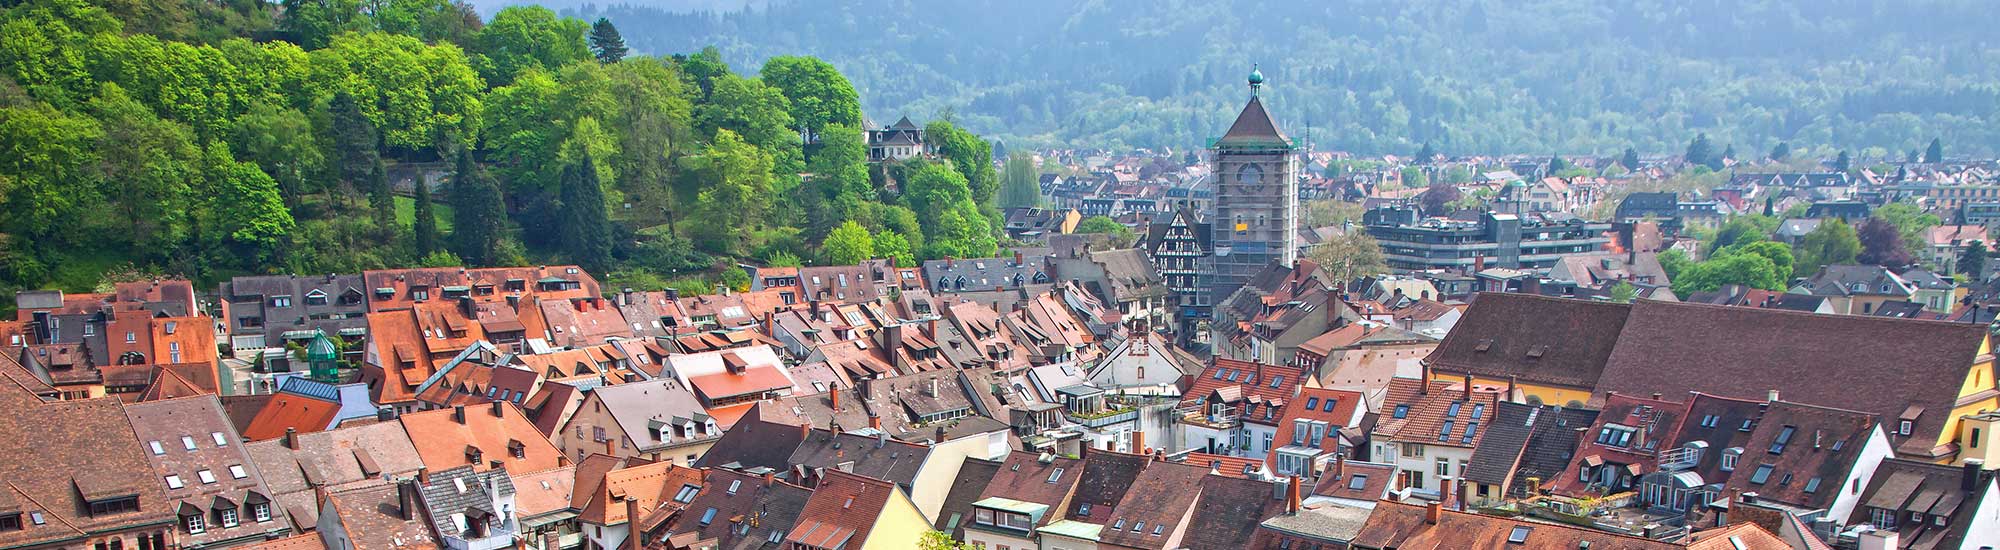 Über den Dächern von Freiburg im Breisgau